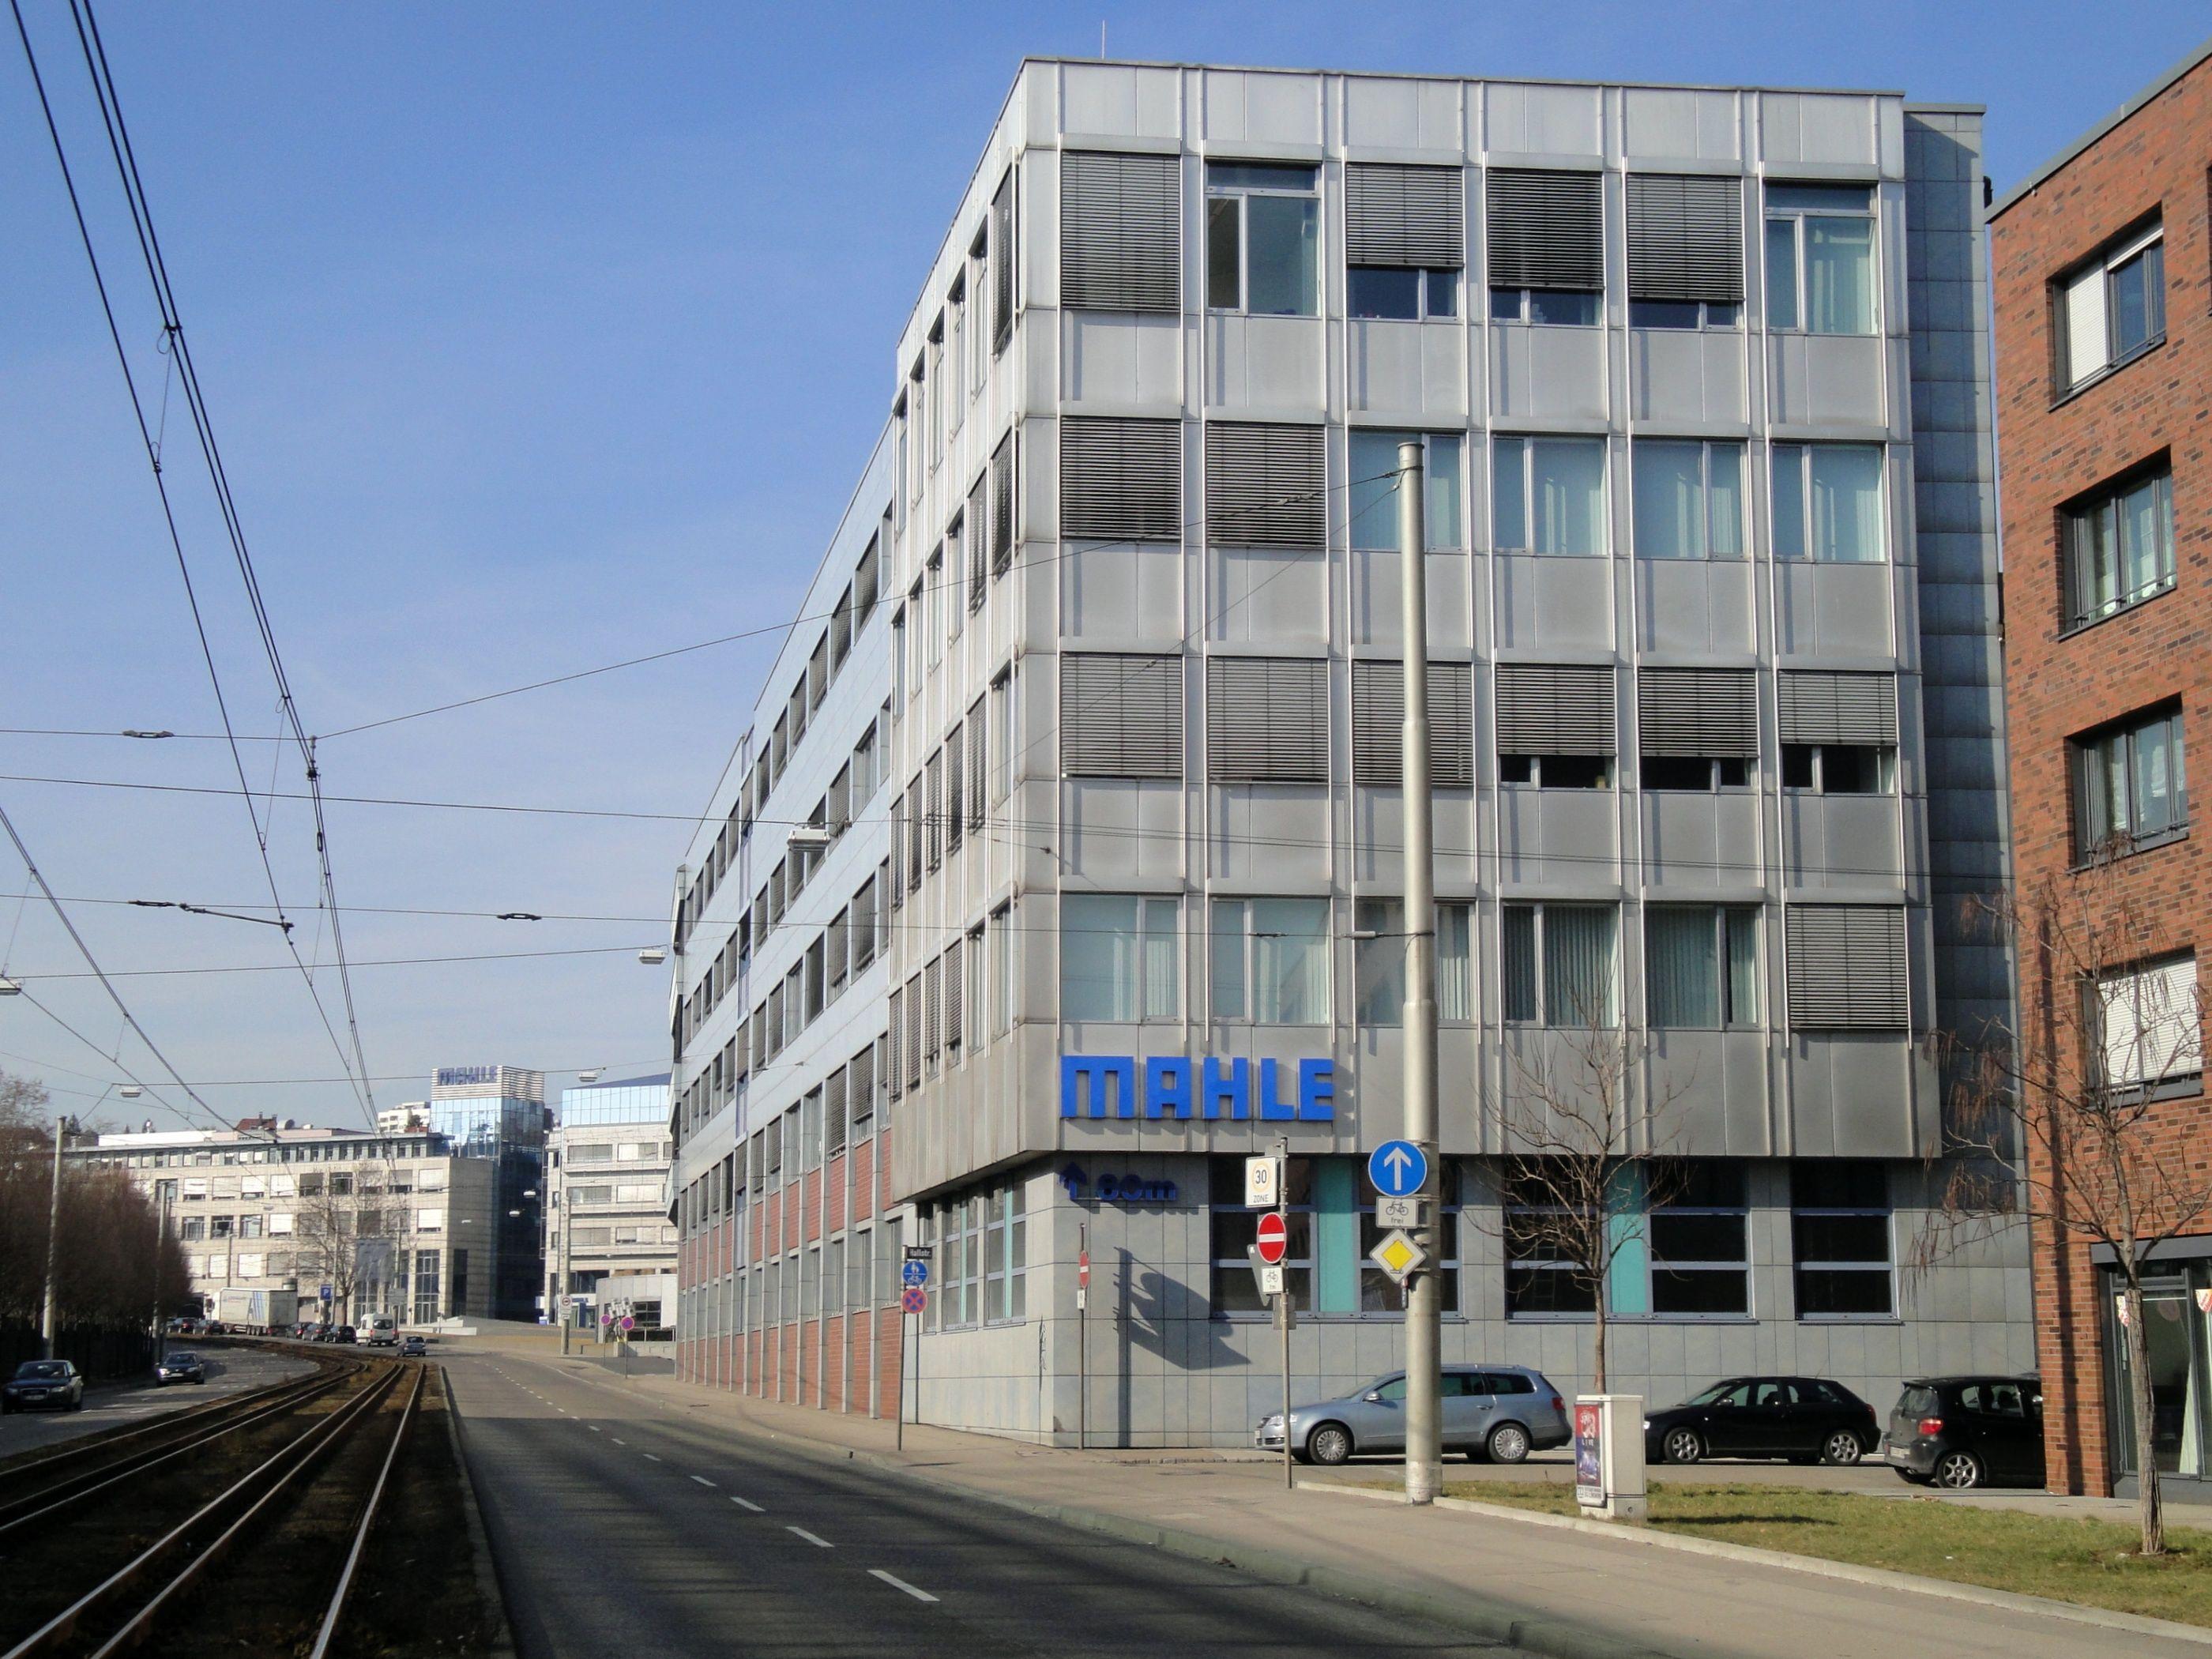 Mahle Logo - Mahle GmbH